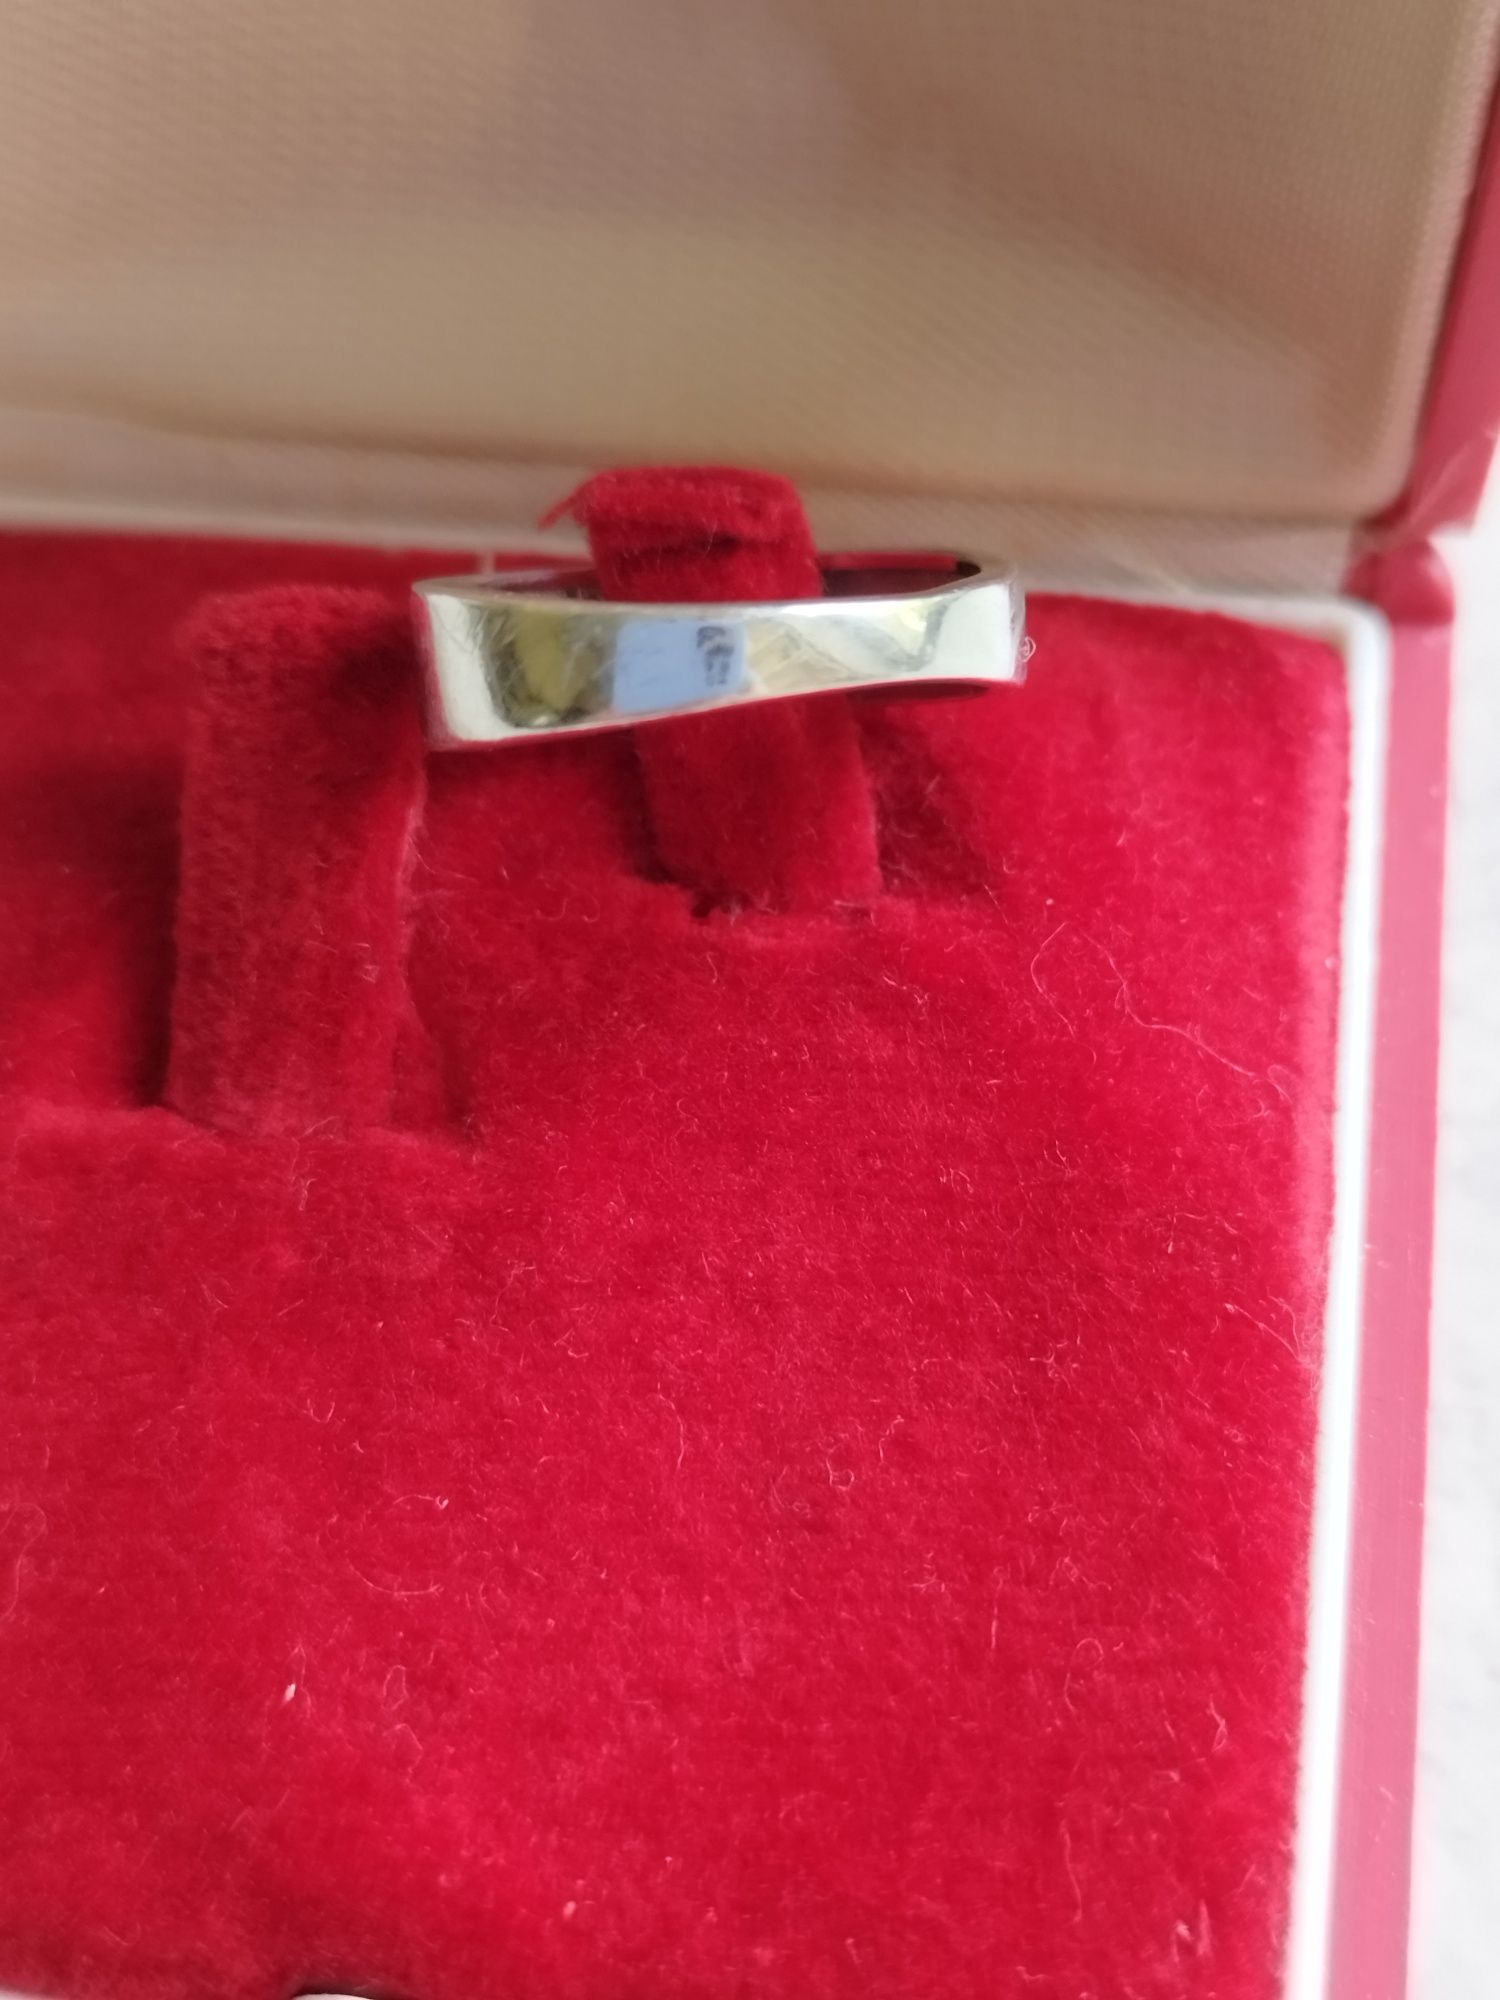 Srebrny pierścionek 925 z cyrkoniami mały rozmiar